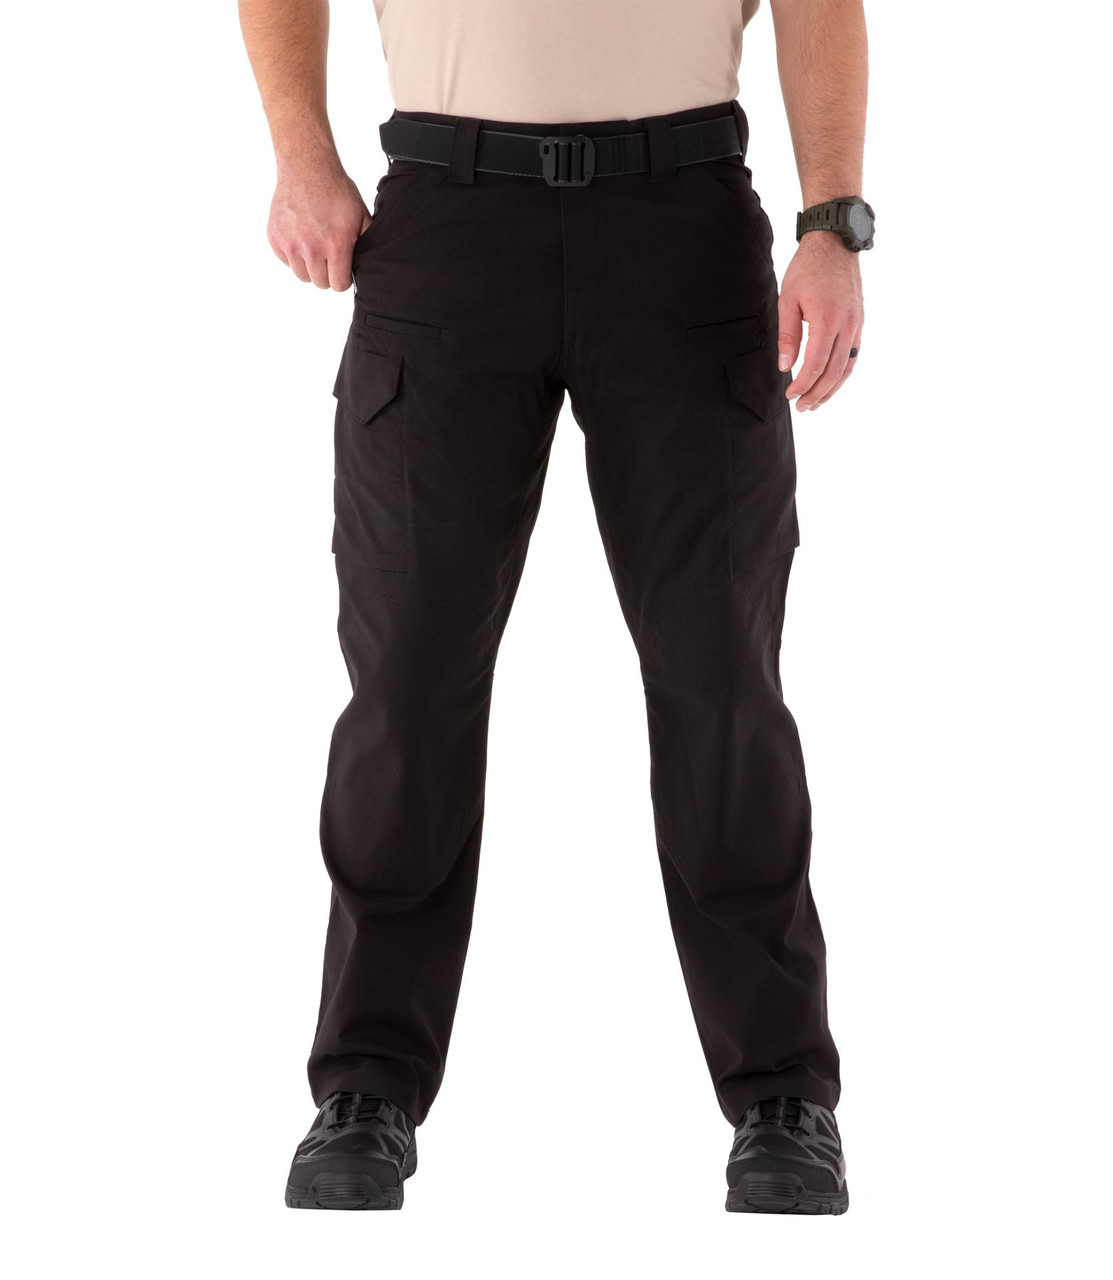 Tru-Spec 24-7 Series Men's Tactical Pants Khaki - 106000